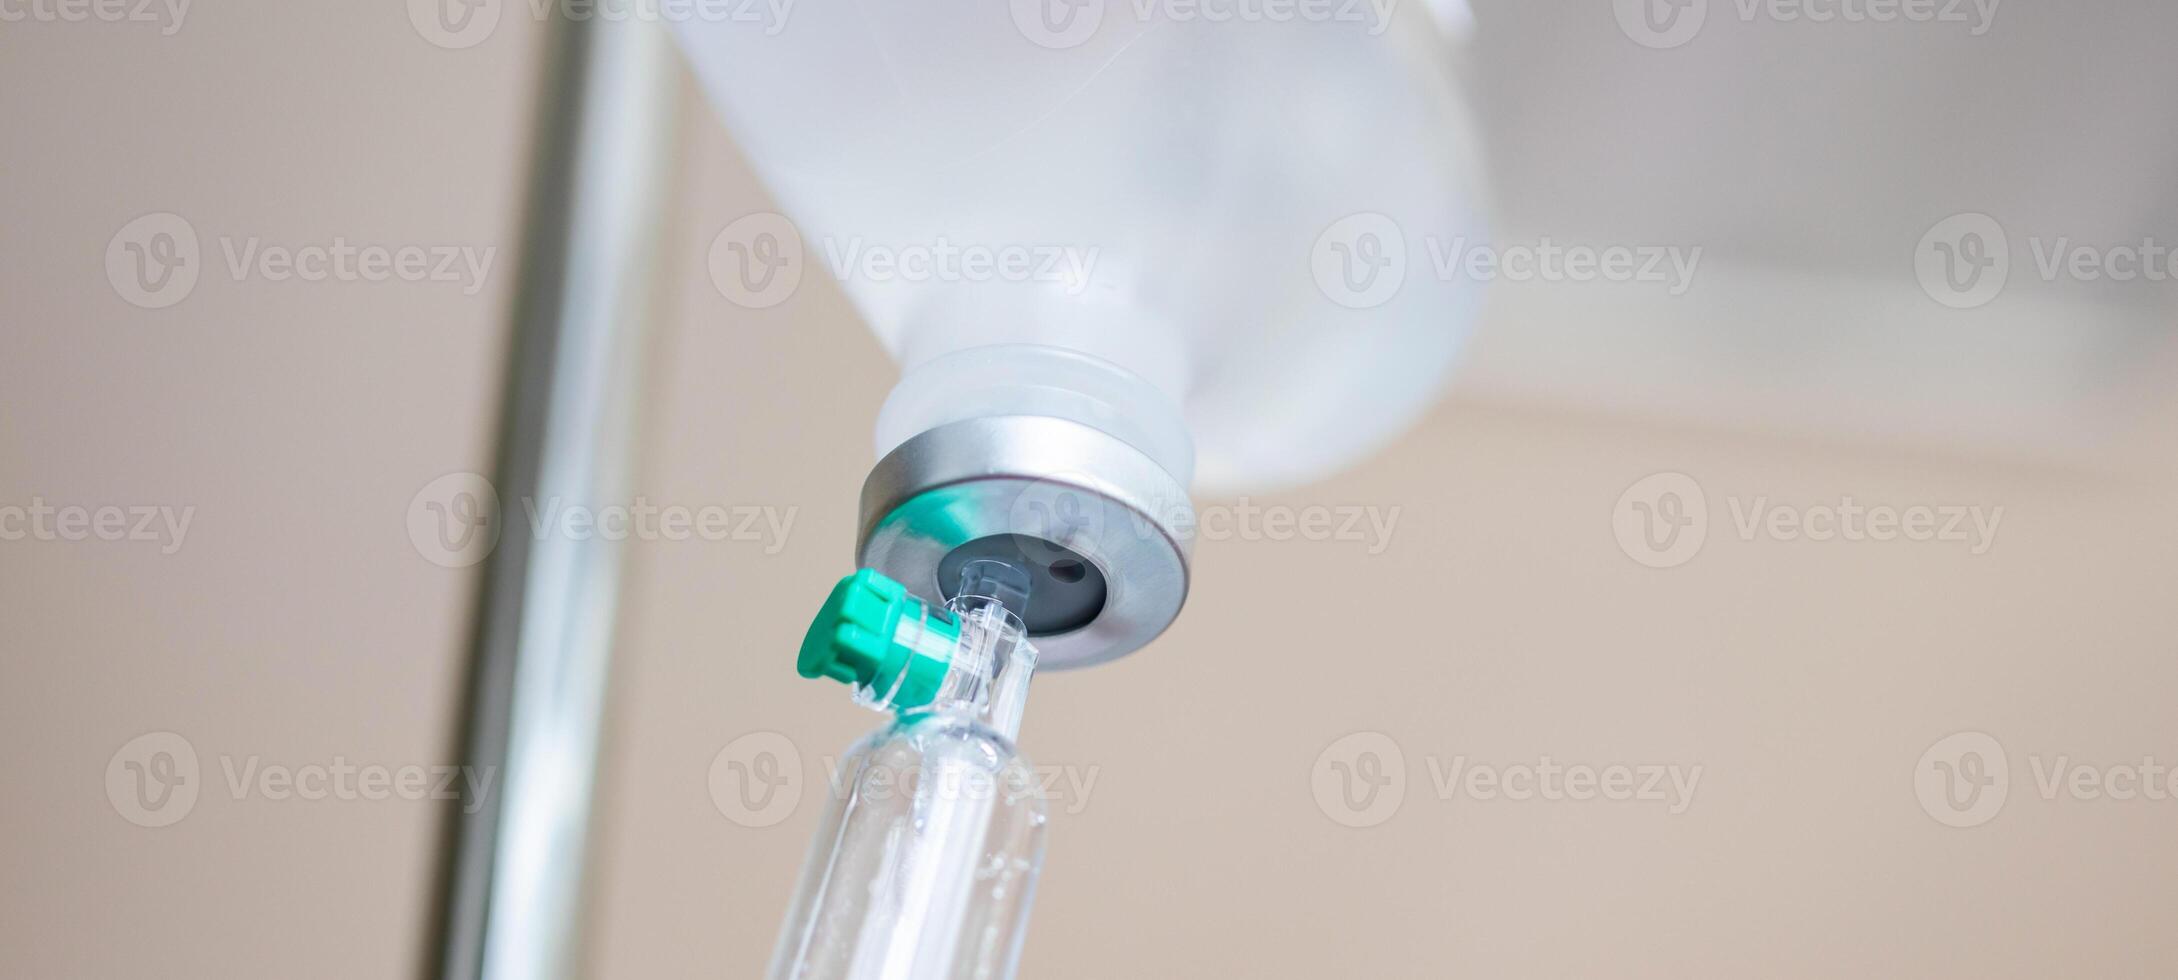 stänga upp medicinsk intravenös iv droppa i sjukhus bakgrund foto